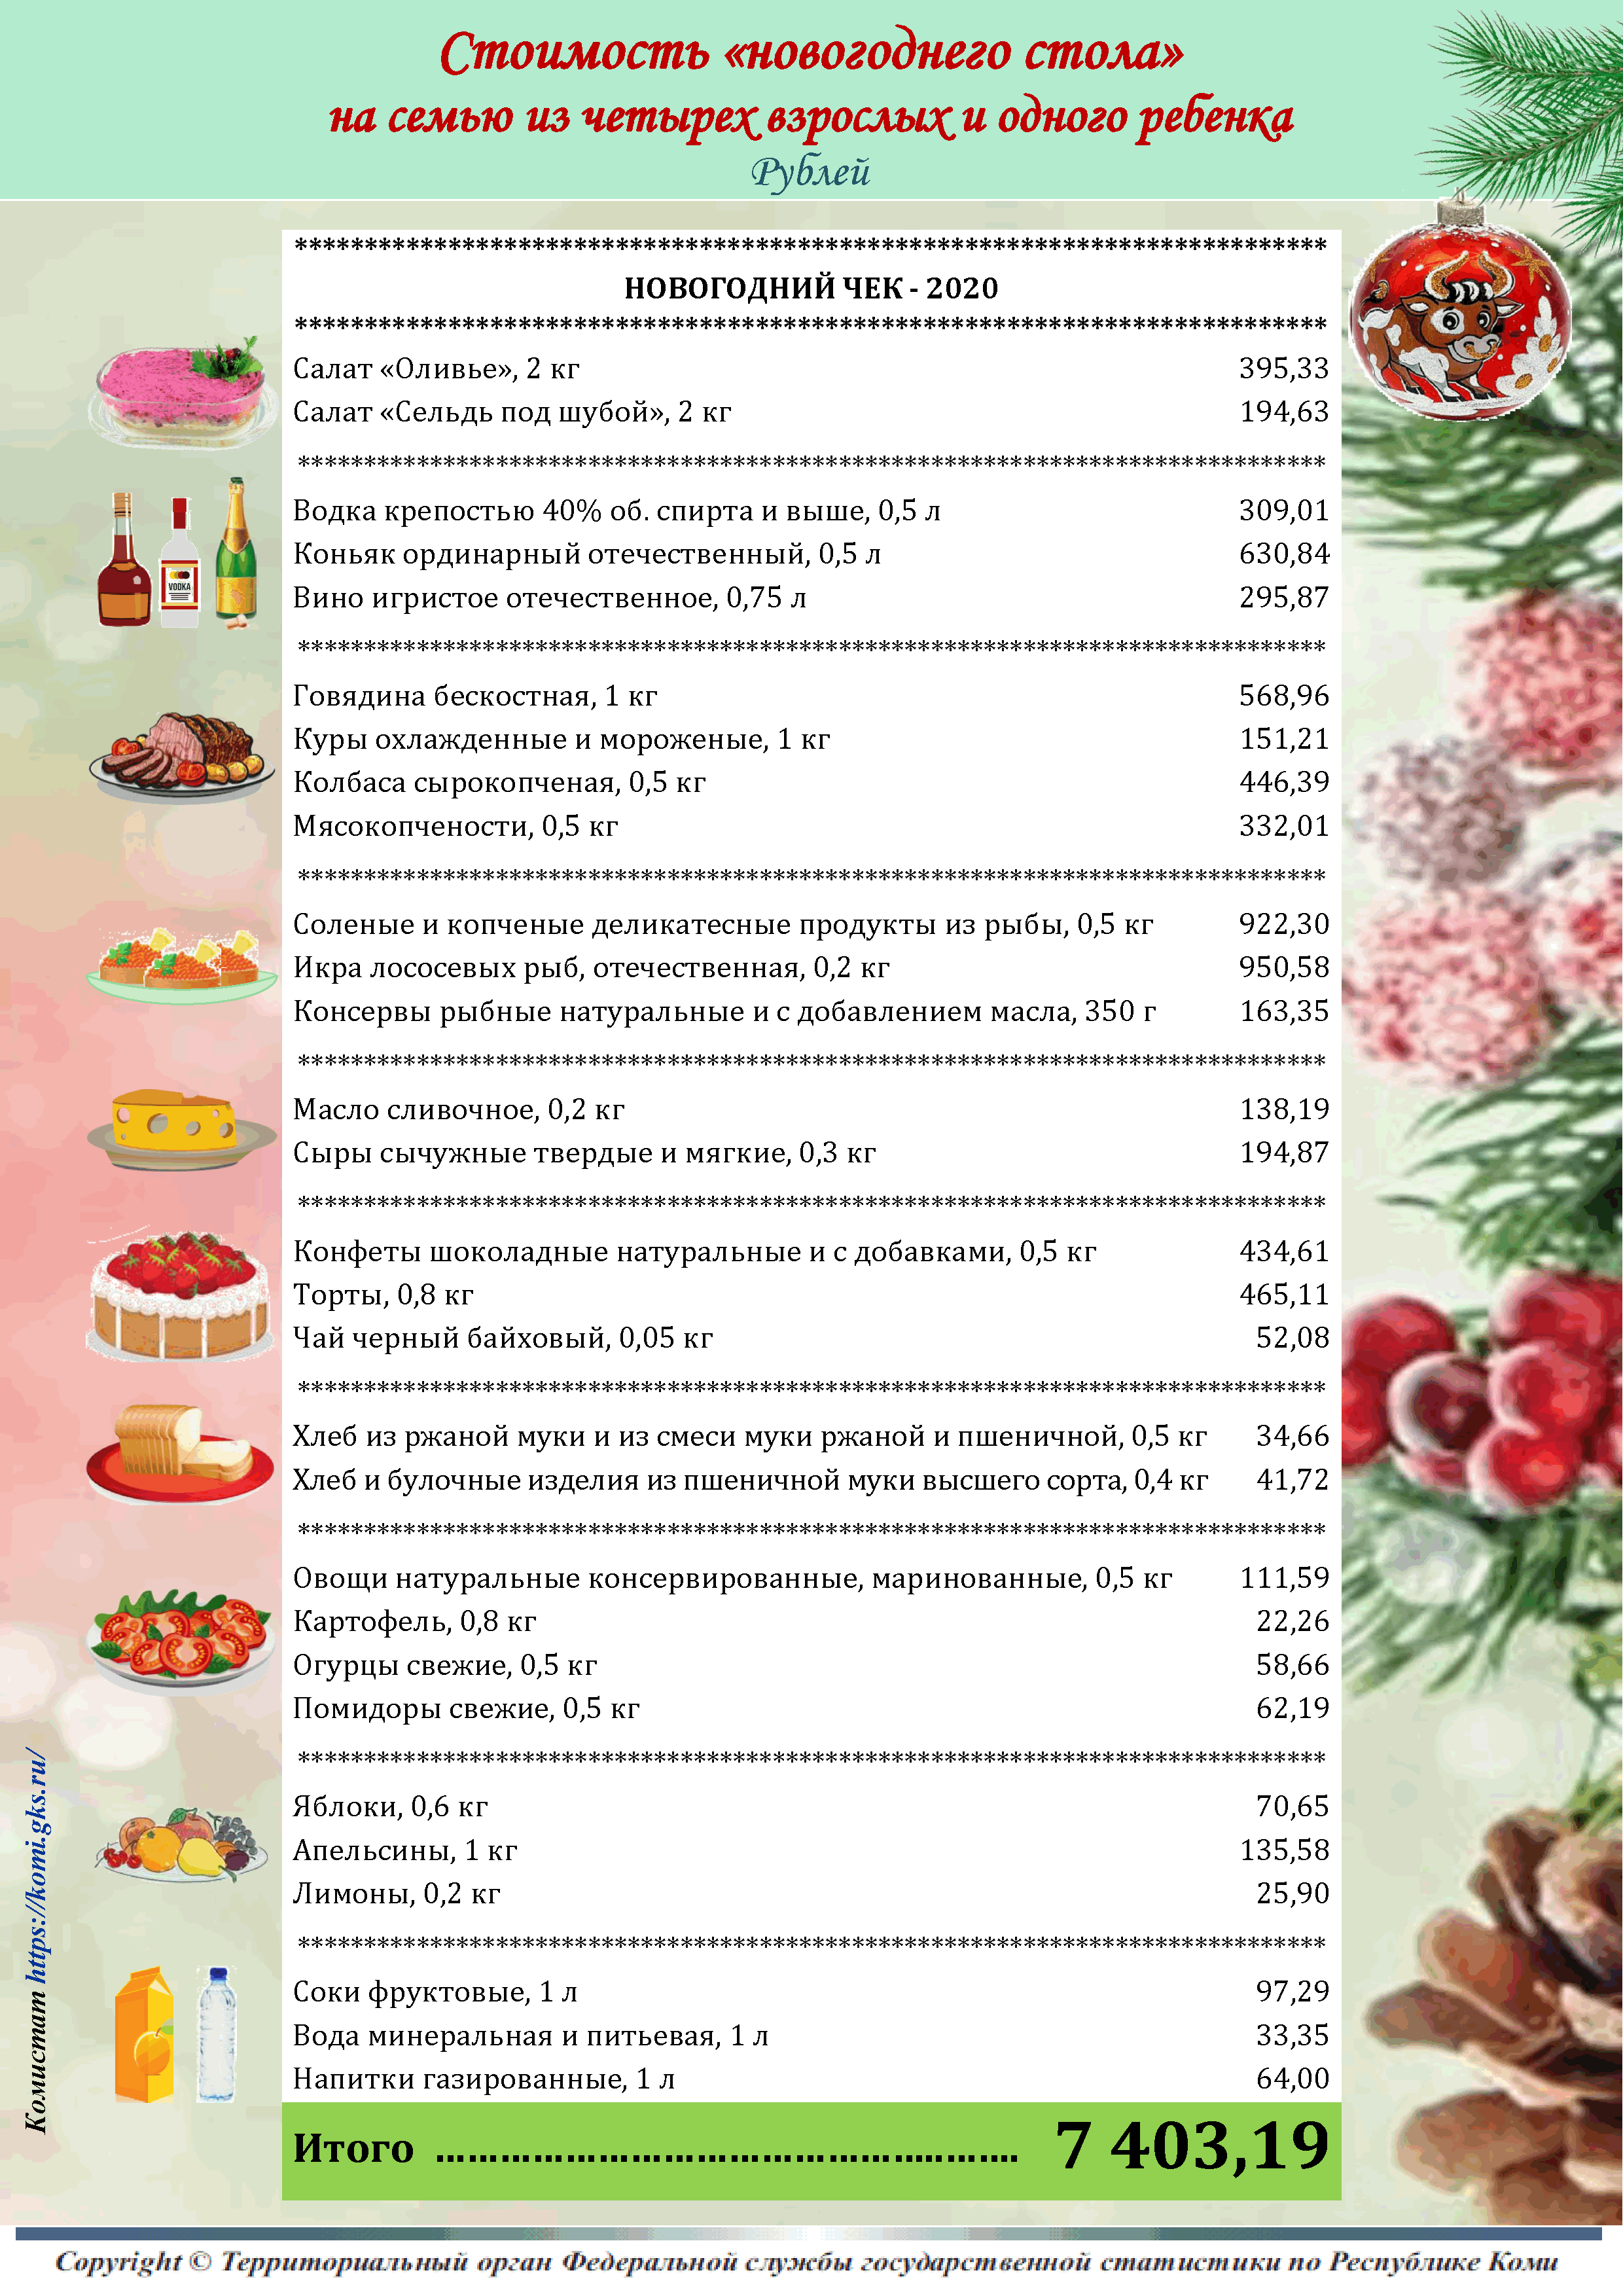 список продуктов на стол на новый год